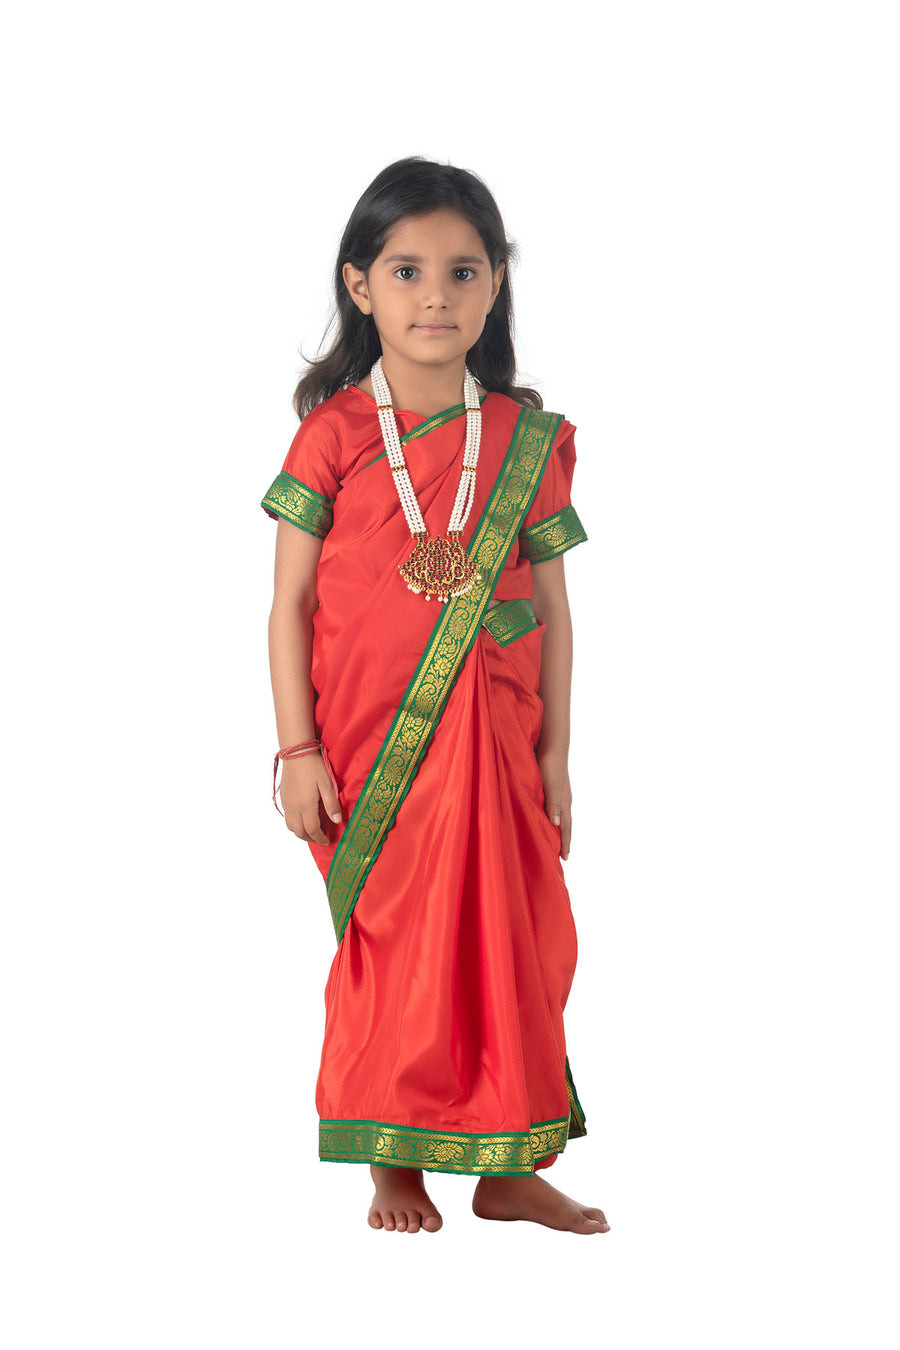 Mahabharat Characters | Buy or Rent Kids Fancy Dress Costume in India -  Golden